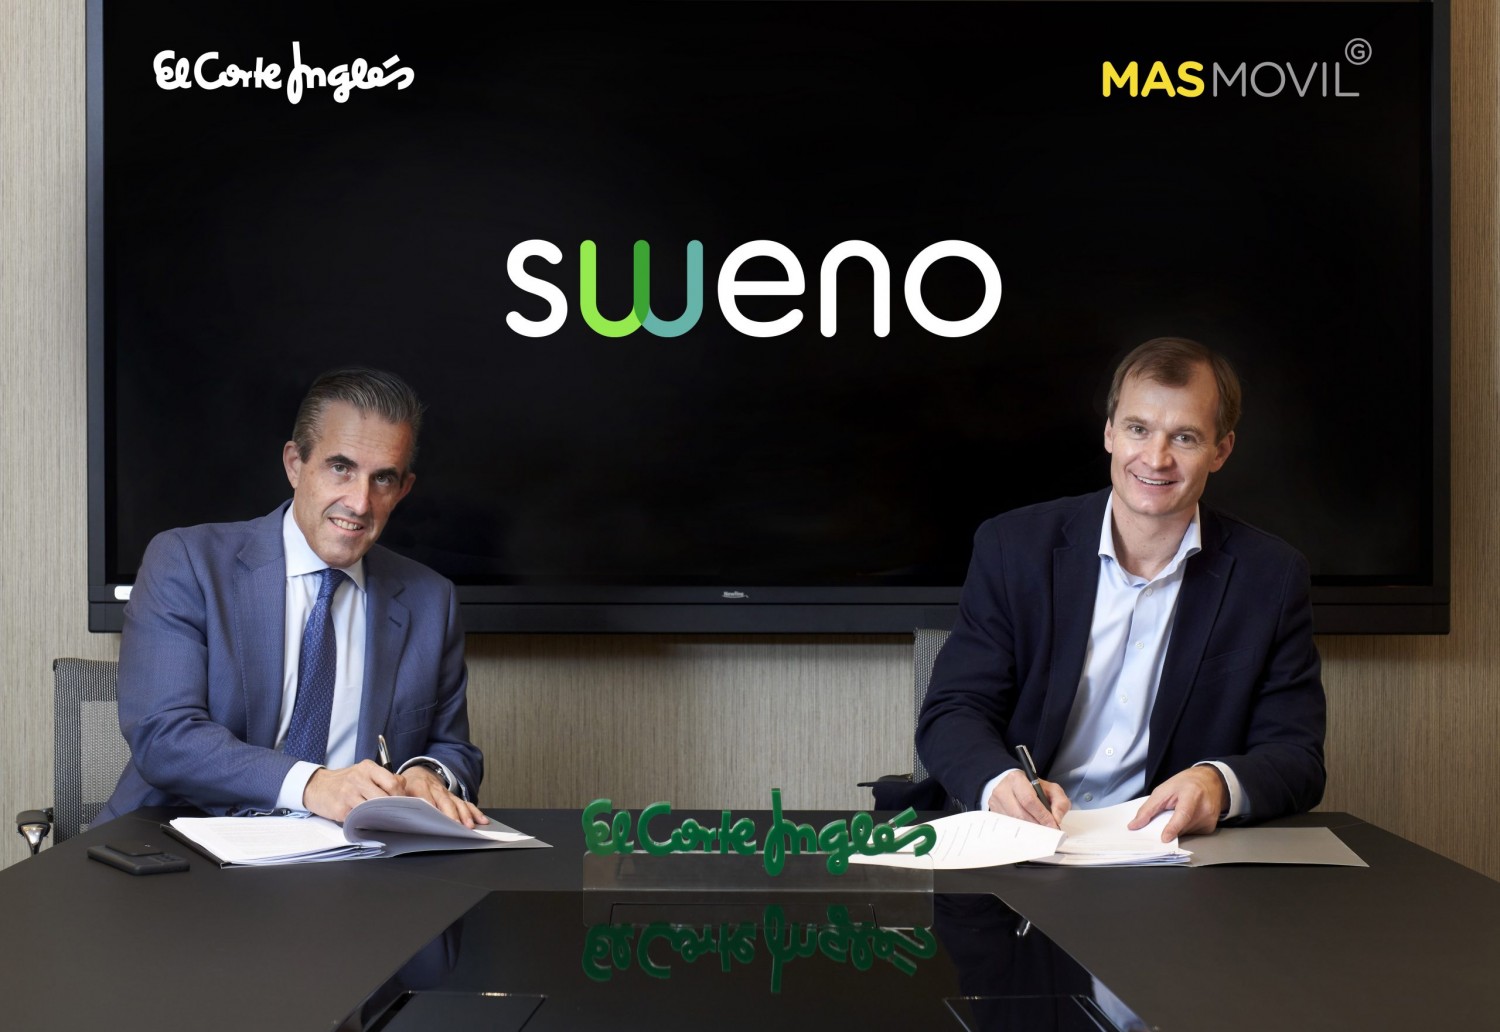 El Corte Inglés lanza un operador virtual de móvil y fibra bajo la marca Sweno